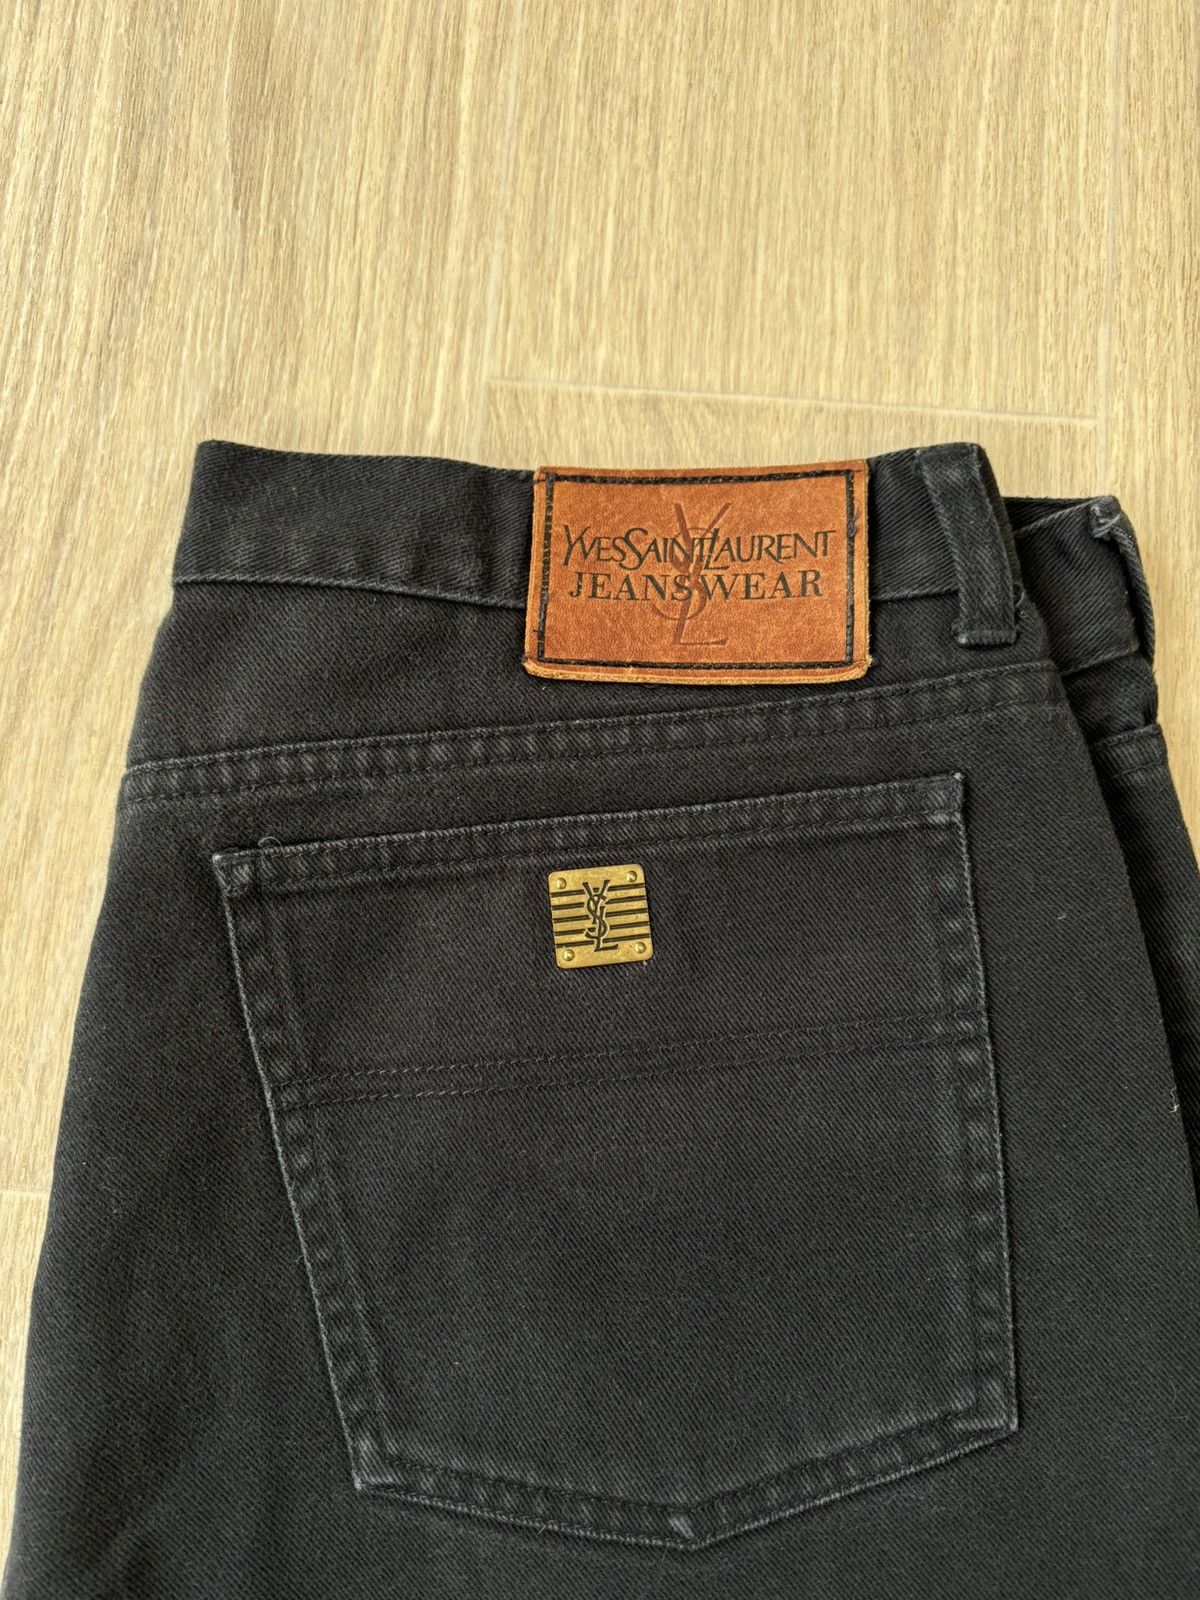 Vintage Vintage YSL jeans 90s rare Size US 36 / EU 52 - 2 Preview